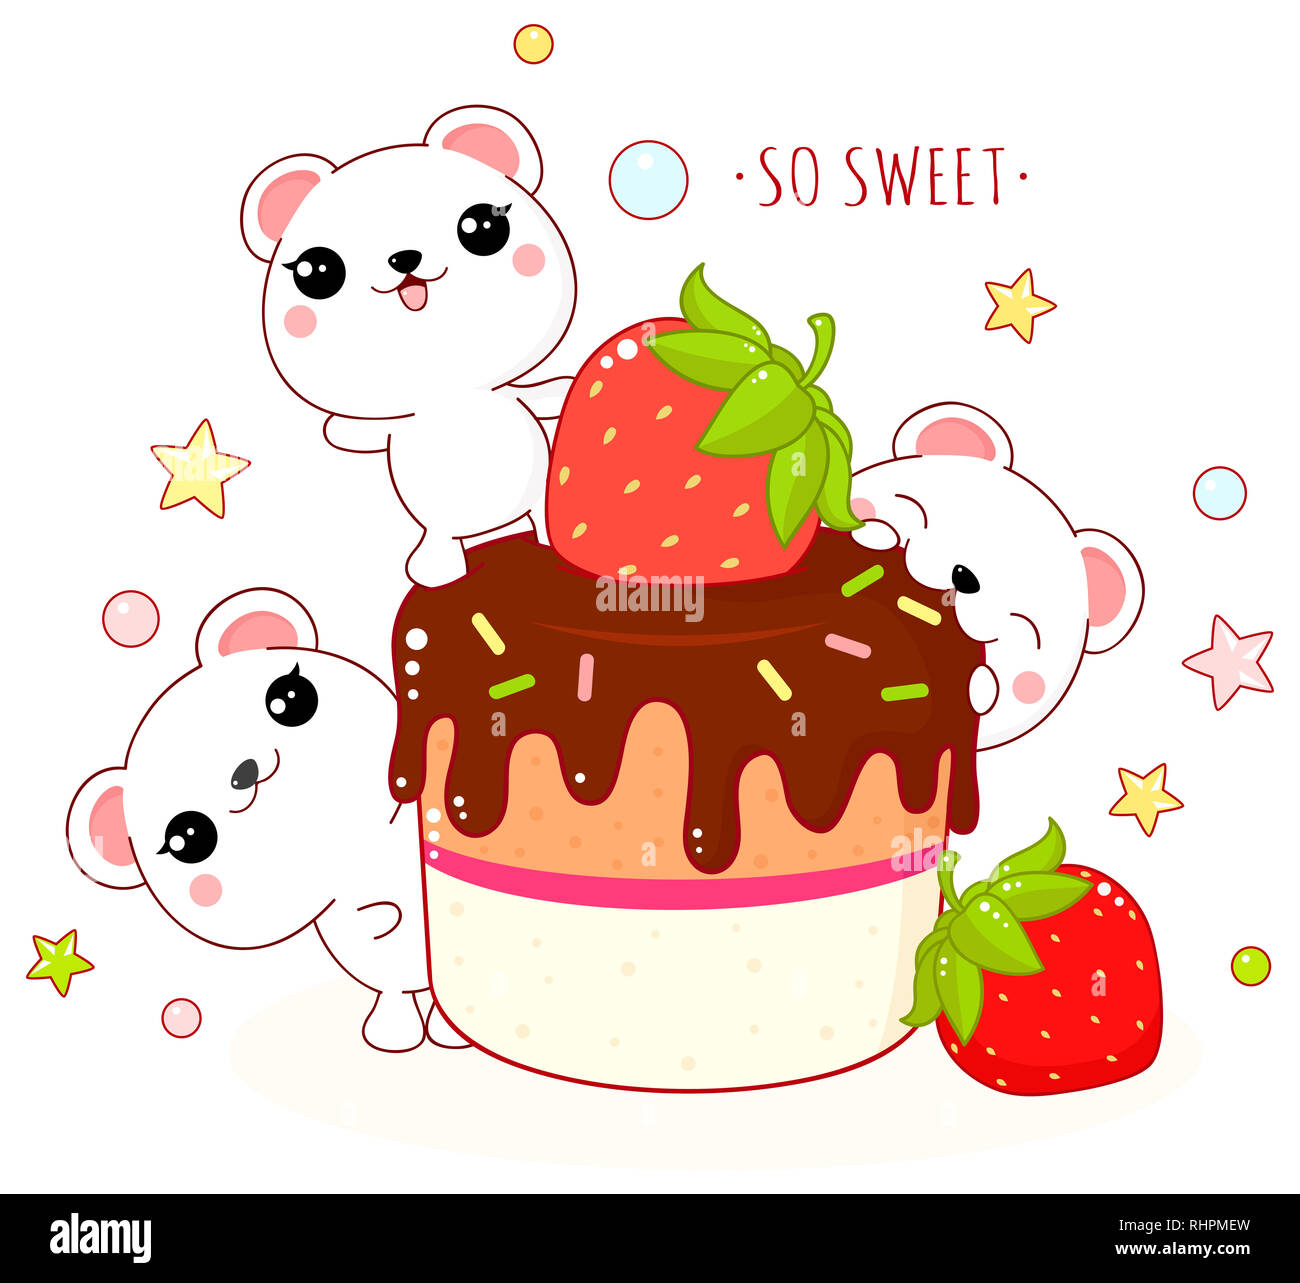 Cute yummy tarjeta en estilo kawaii. Adorable oso polar con tarta de fresas  con chocolate. Inscripción tan dulce. EPS8 Fotografía de stock - Alamy